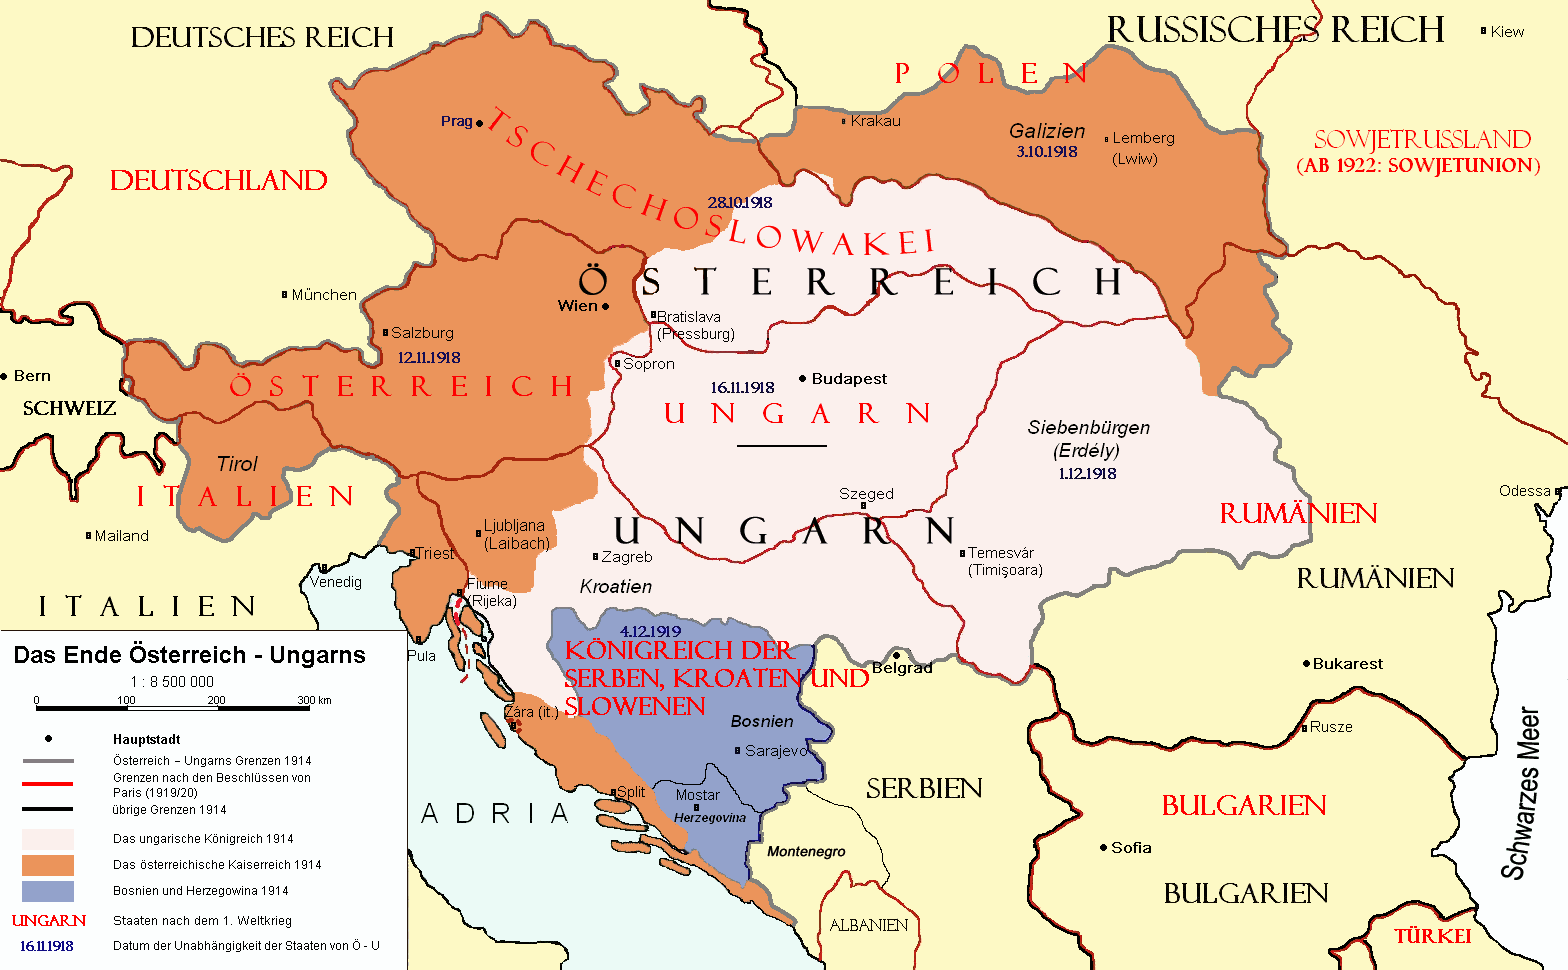 Après la Première Guerre mondiale, l'Europe centrale est redessinnée (C) DR